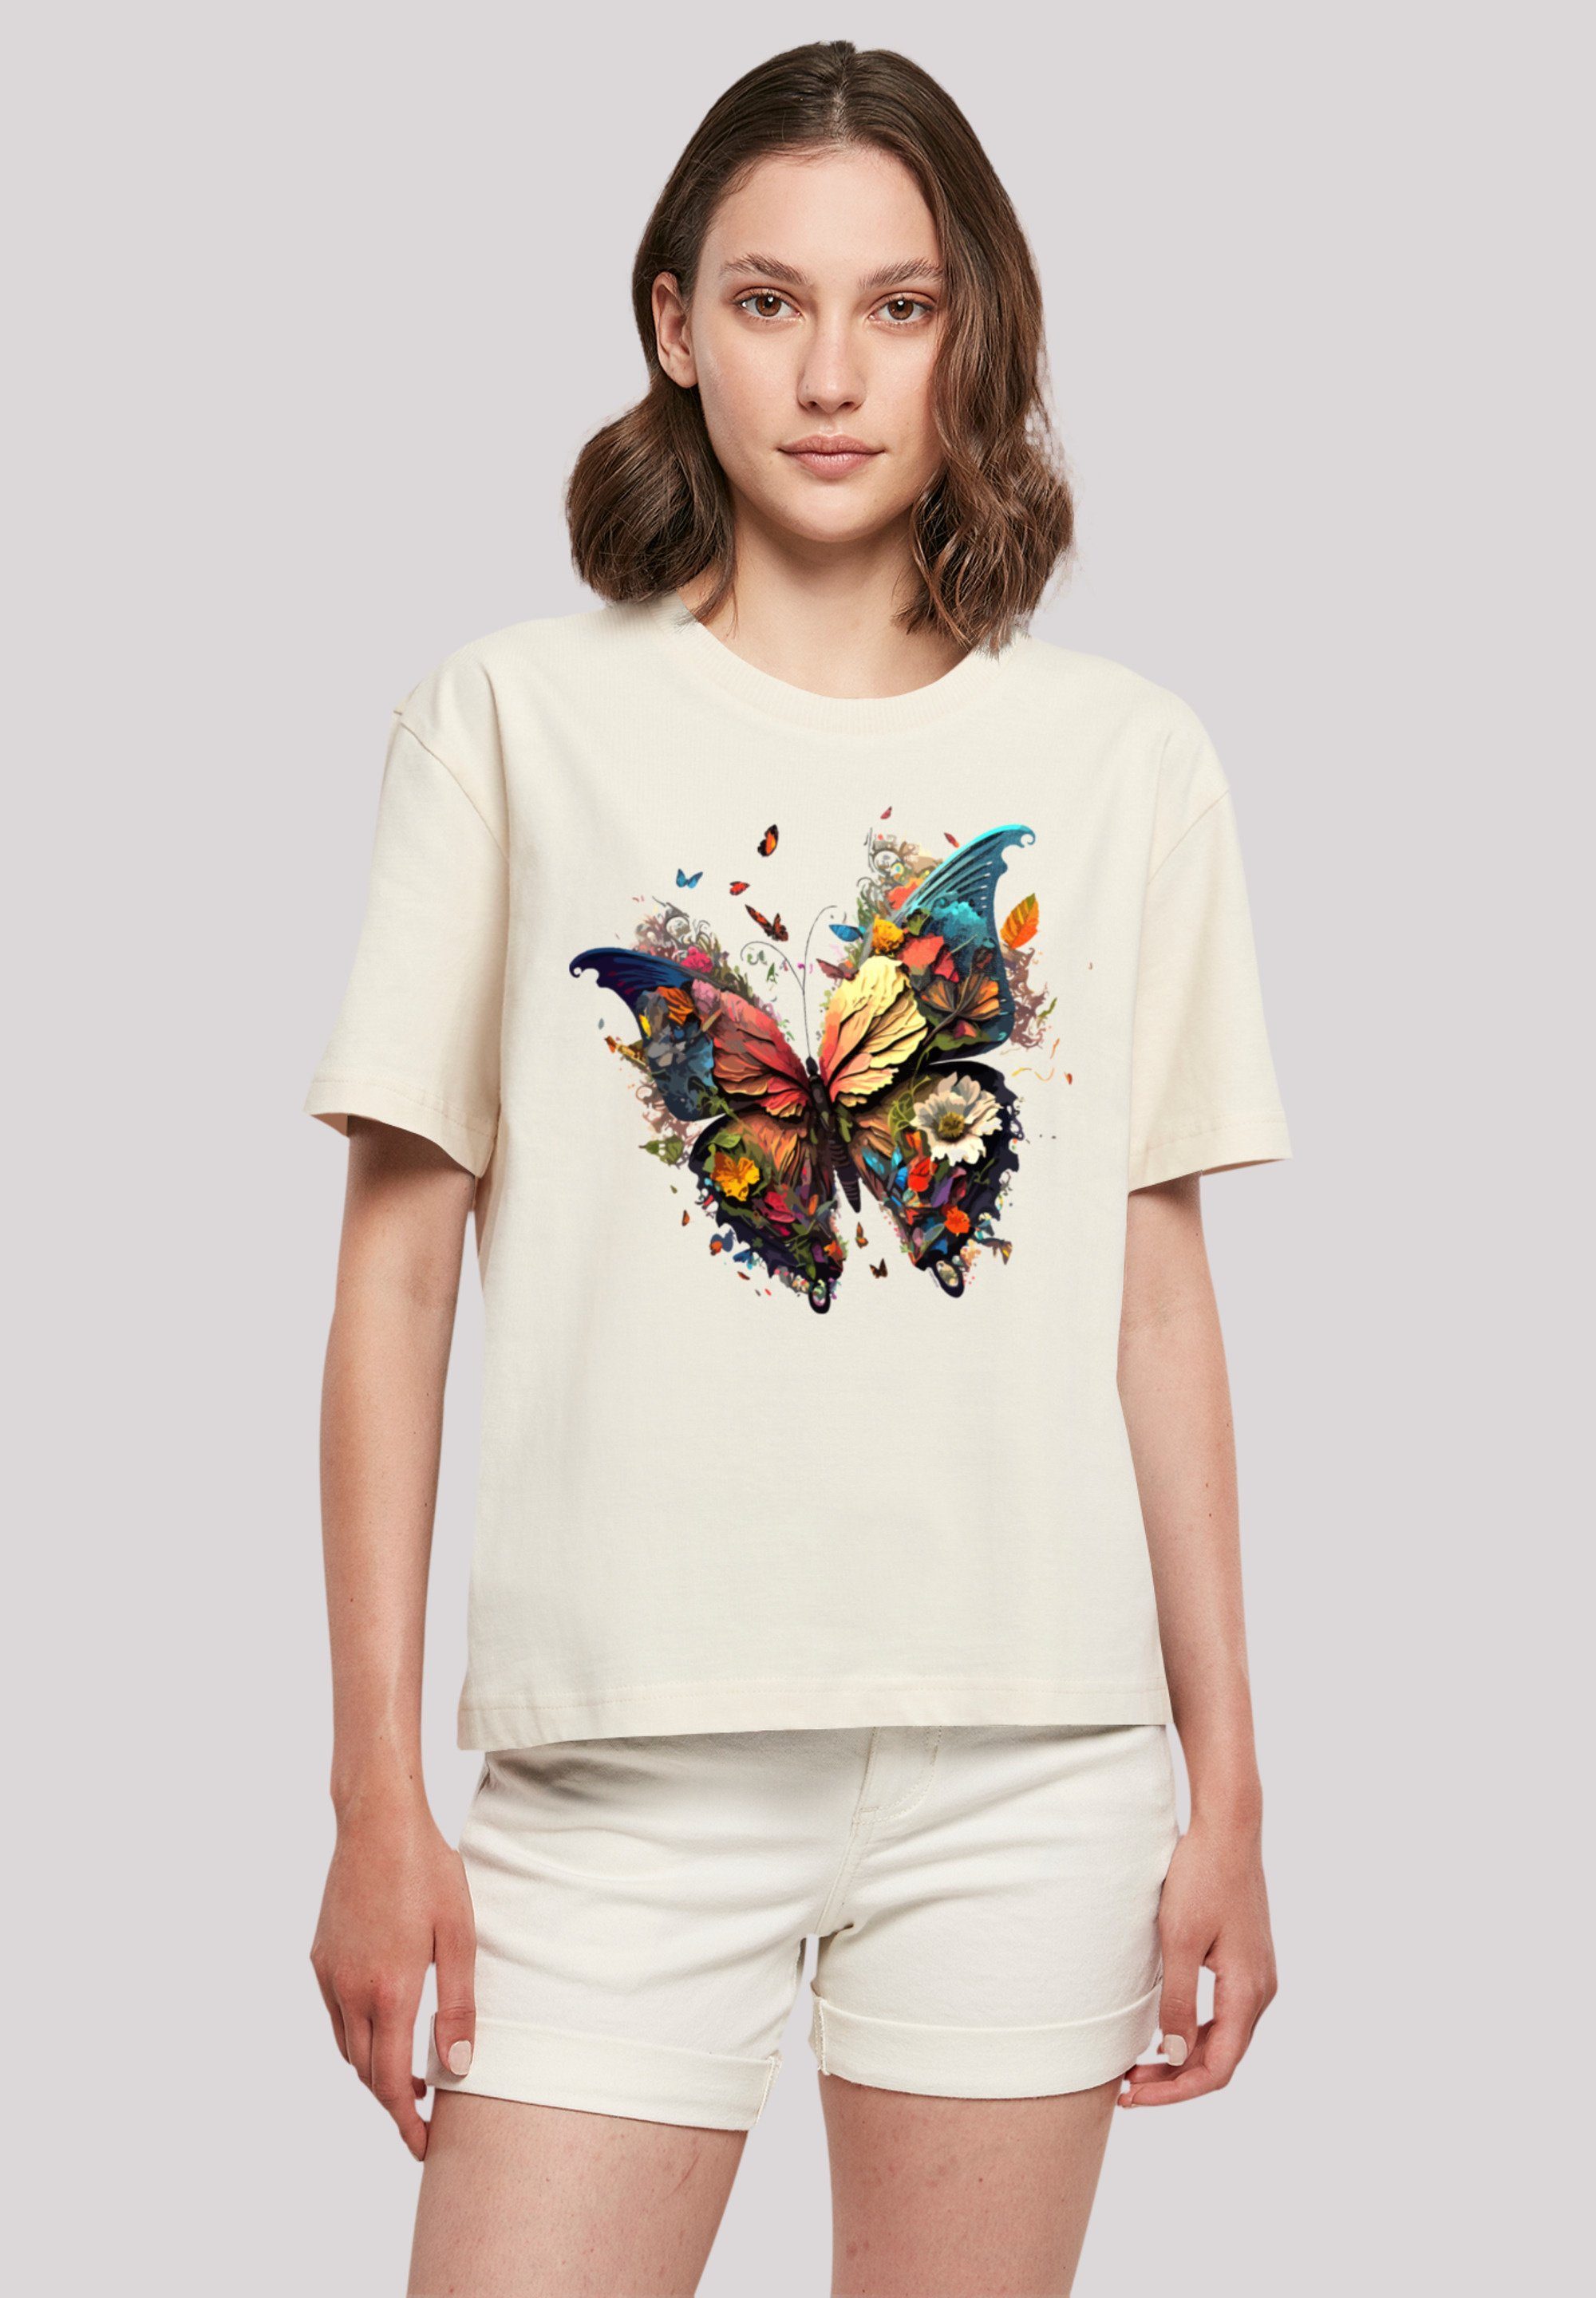 F4NT4STIC T-Shirt Schmetterling Magic Print, Gerippter Rundhalsausschnitt  für stylischen Look